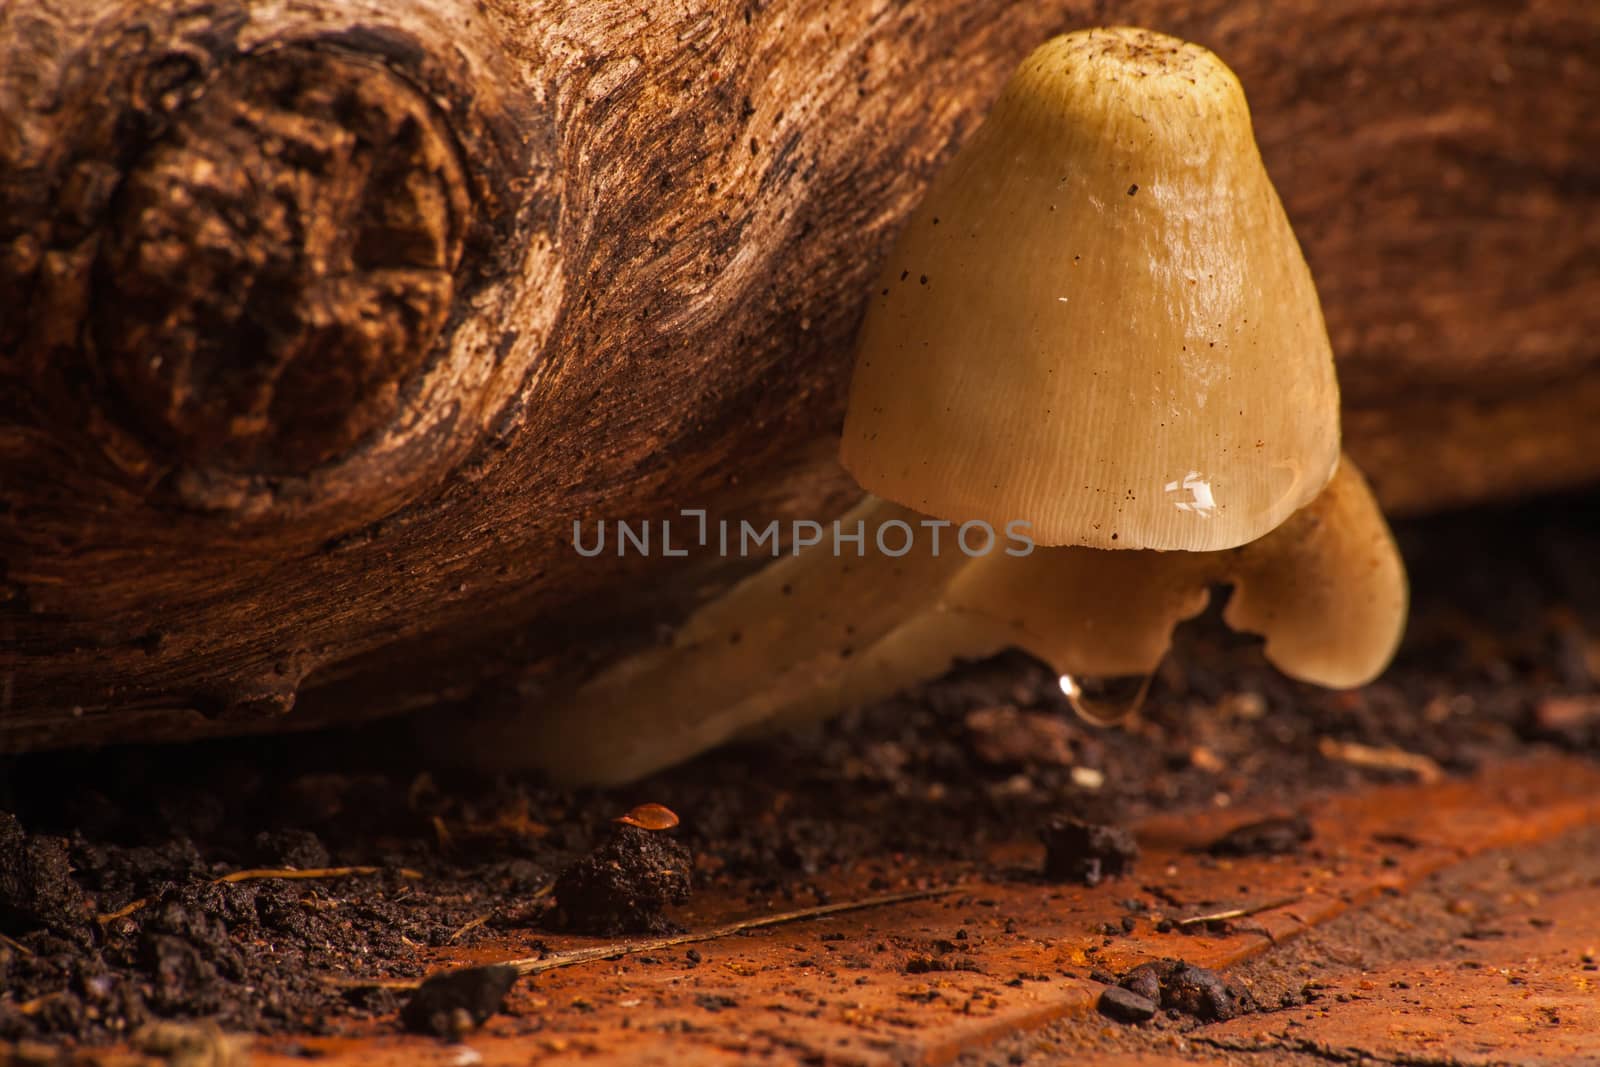 Wild Mushrooms by kobus_peche